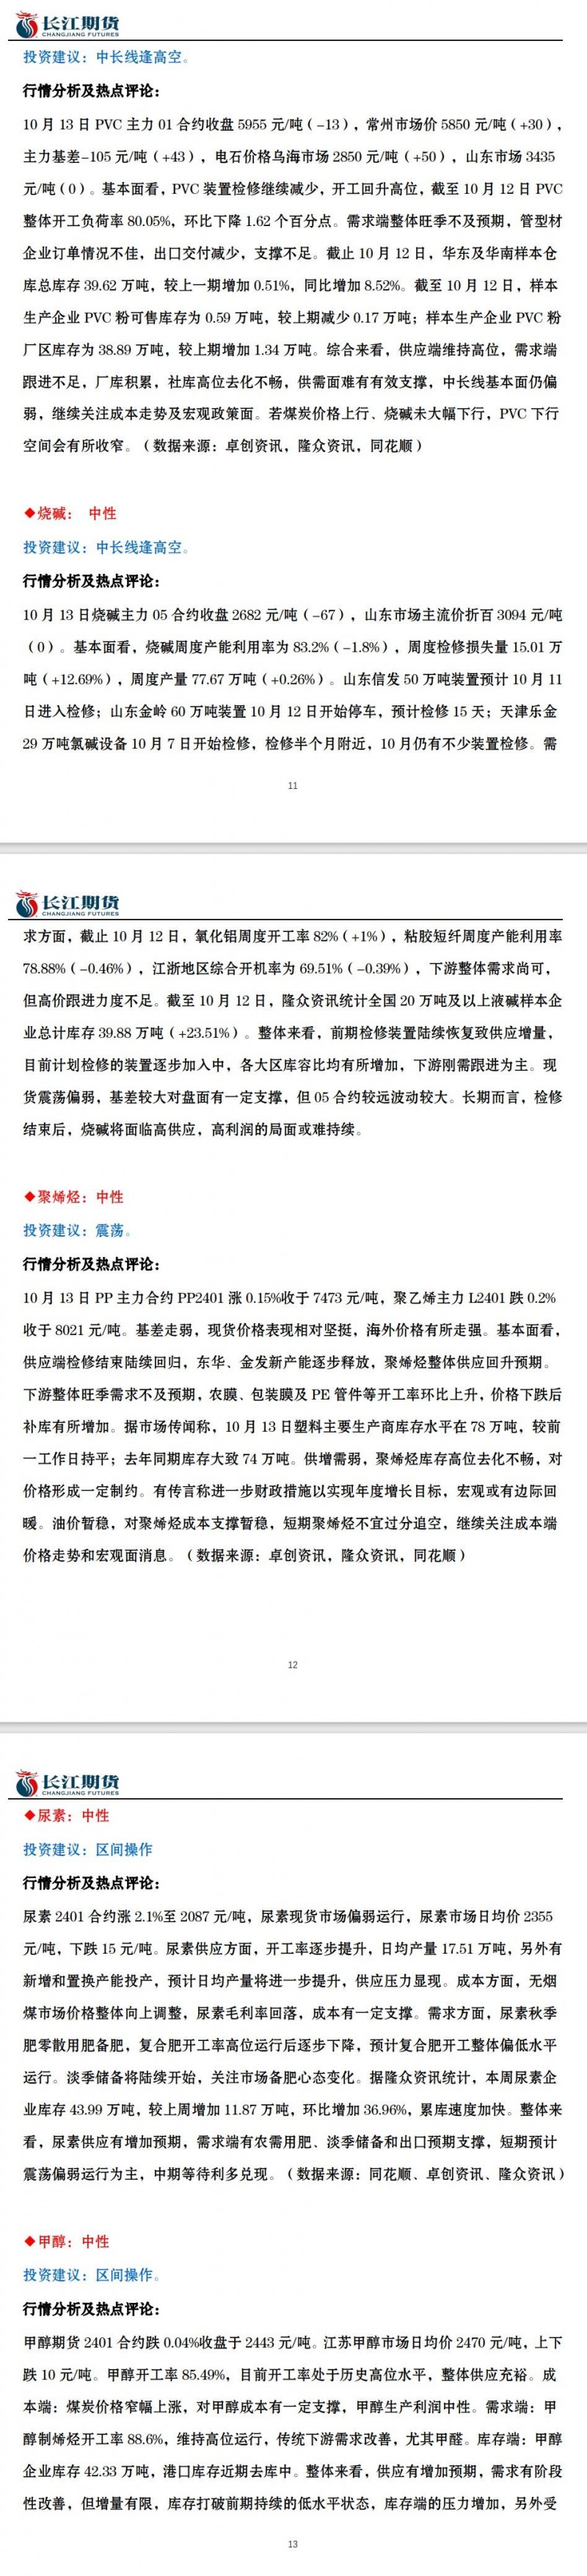 长江期货10月16日期货市场交易指引